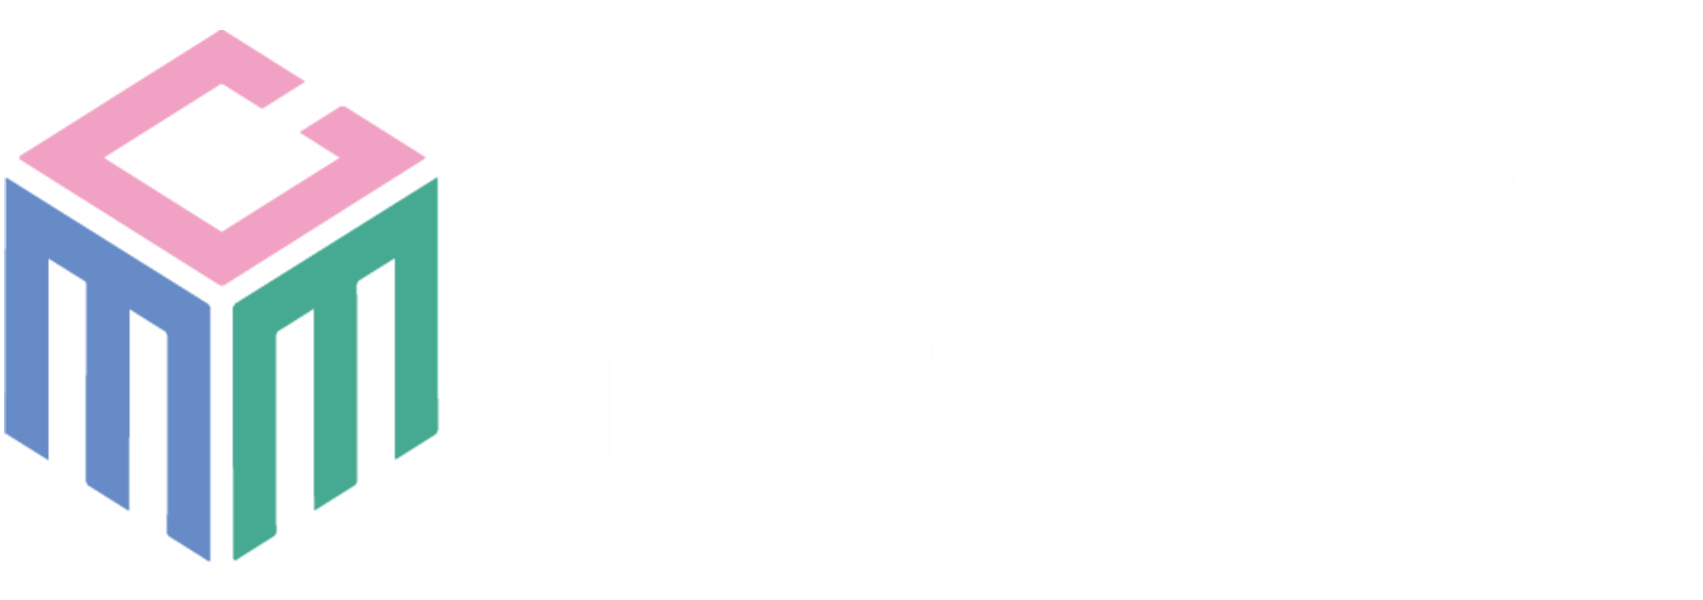 Creative Media Marketing